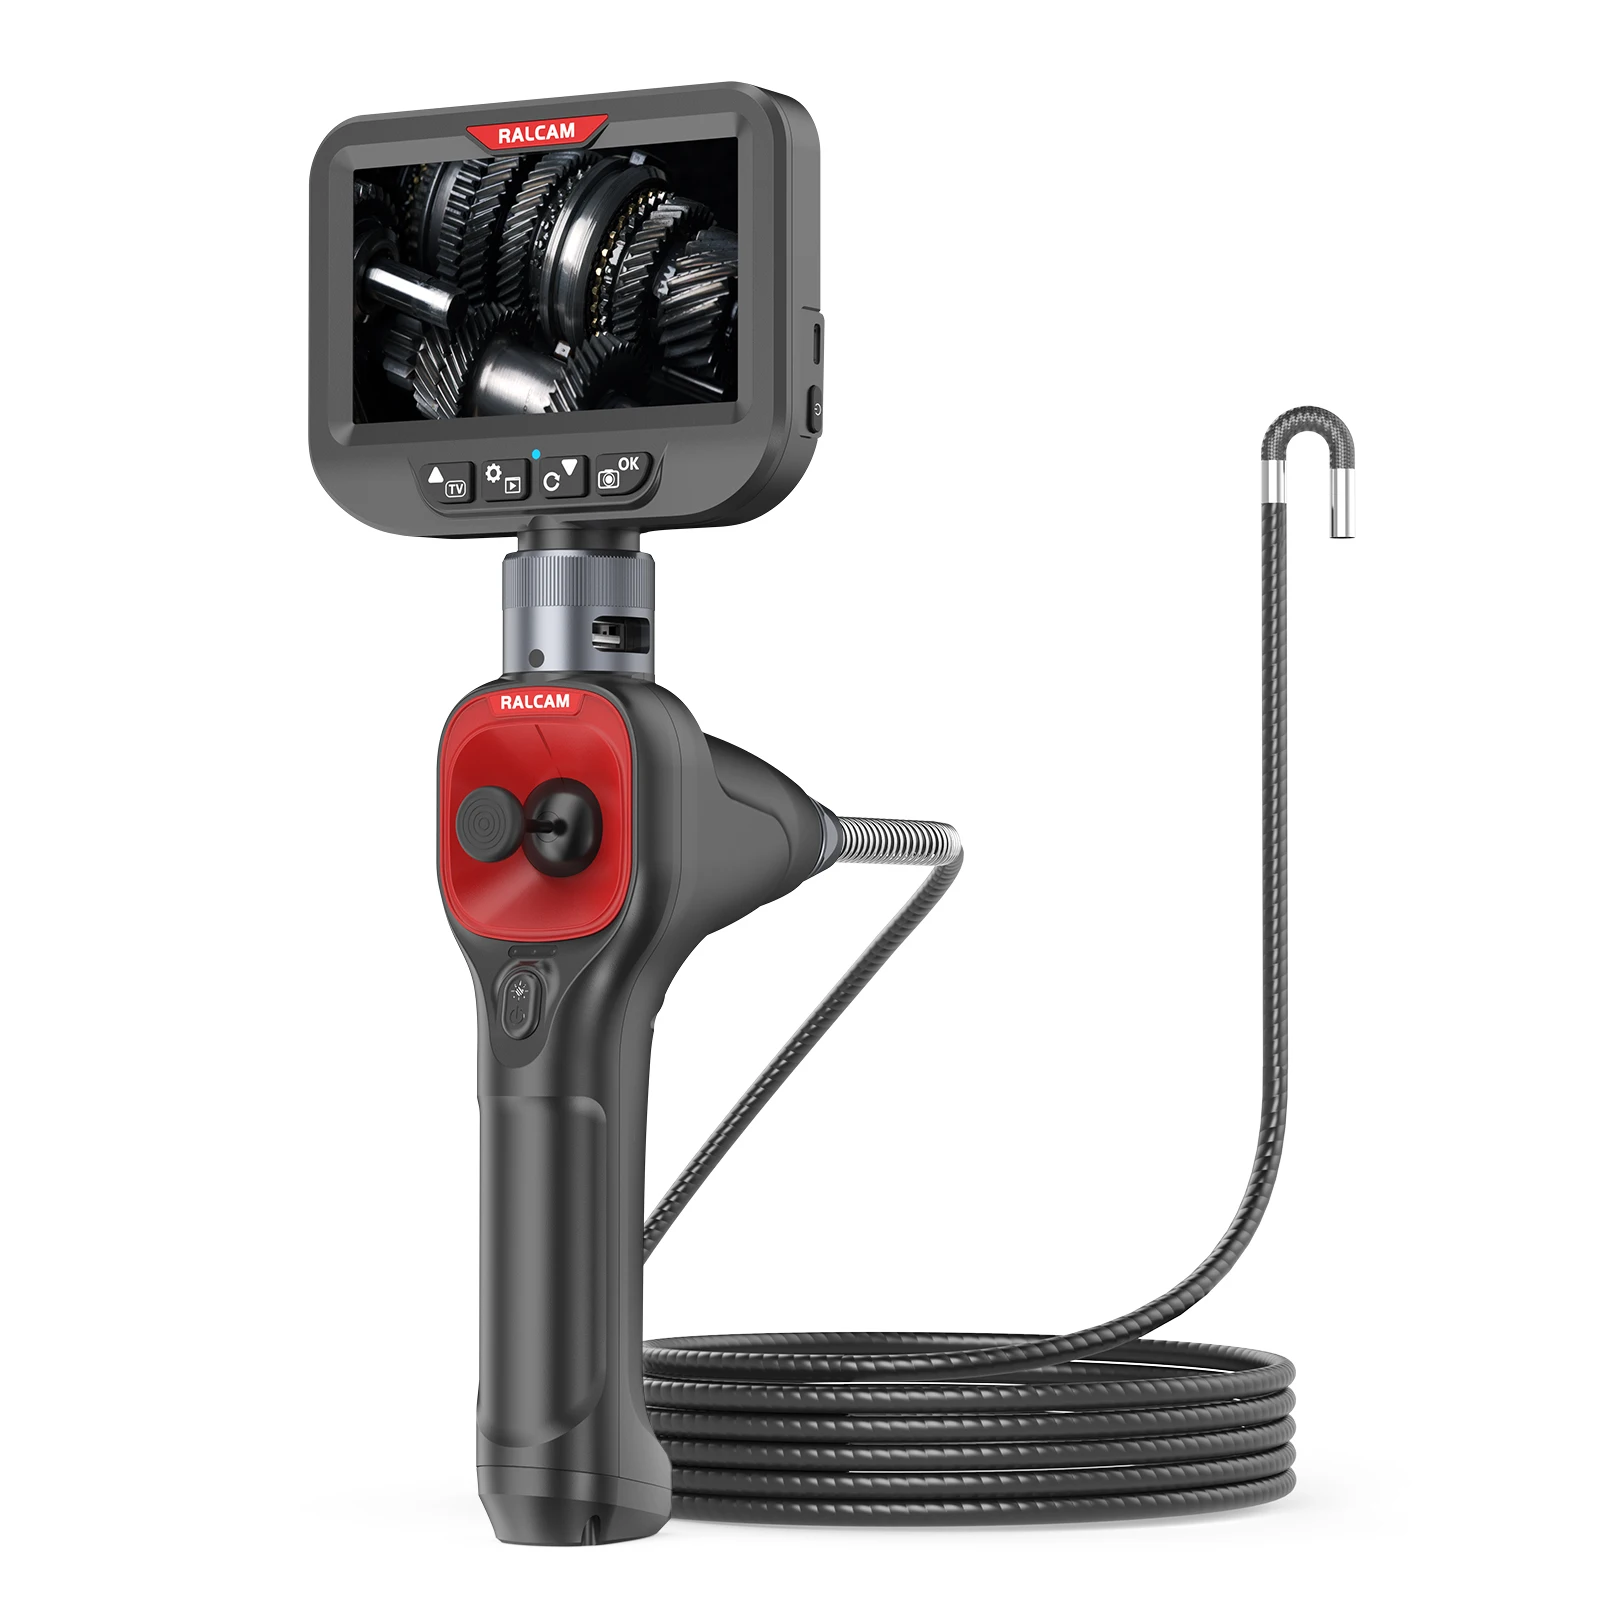 OEM ODM tüp HD endüstriyel borescope kamera 6mm su geçirmez araba tamir borescope 4 yollu eklemli endoskop